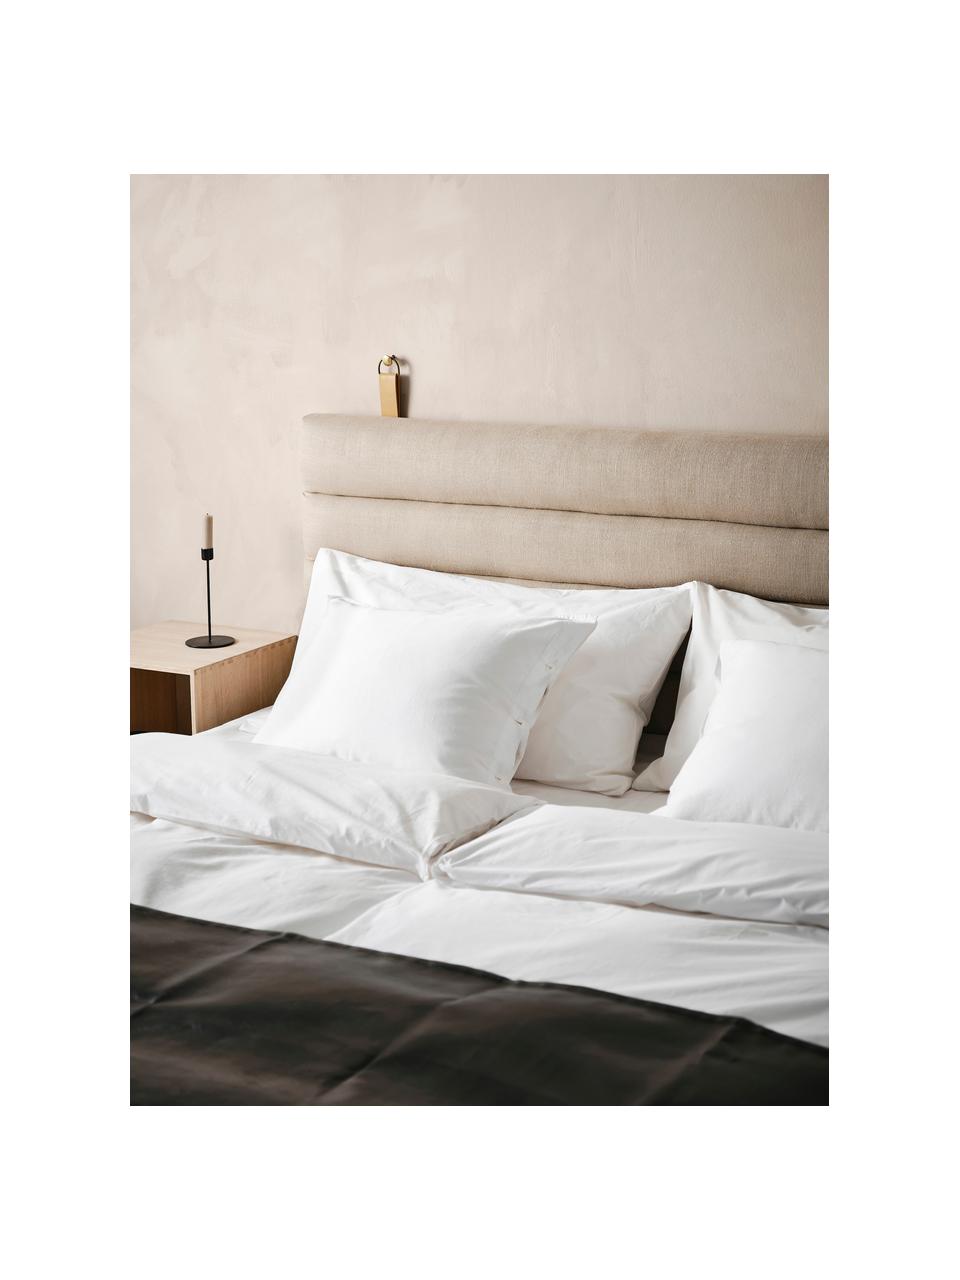 Zagłówek do łóżka tapicerowany Amsterdam, Tapicerka: 100% len, Stelaż: sklejka, Beżowa tkanina, S 160 x W 60 cm